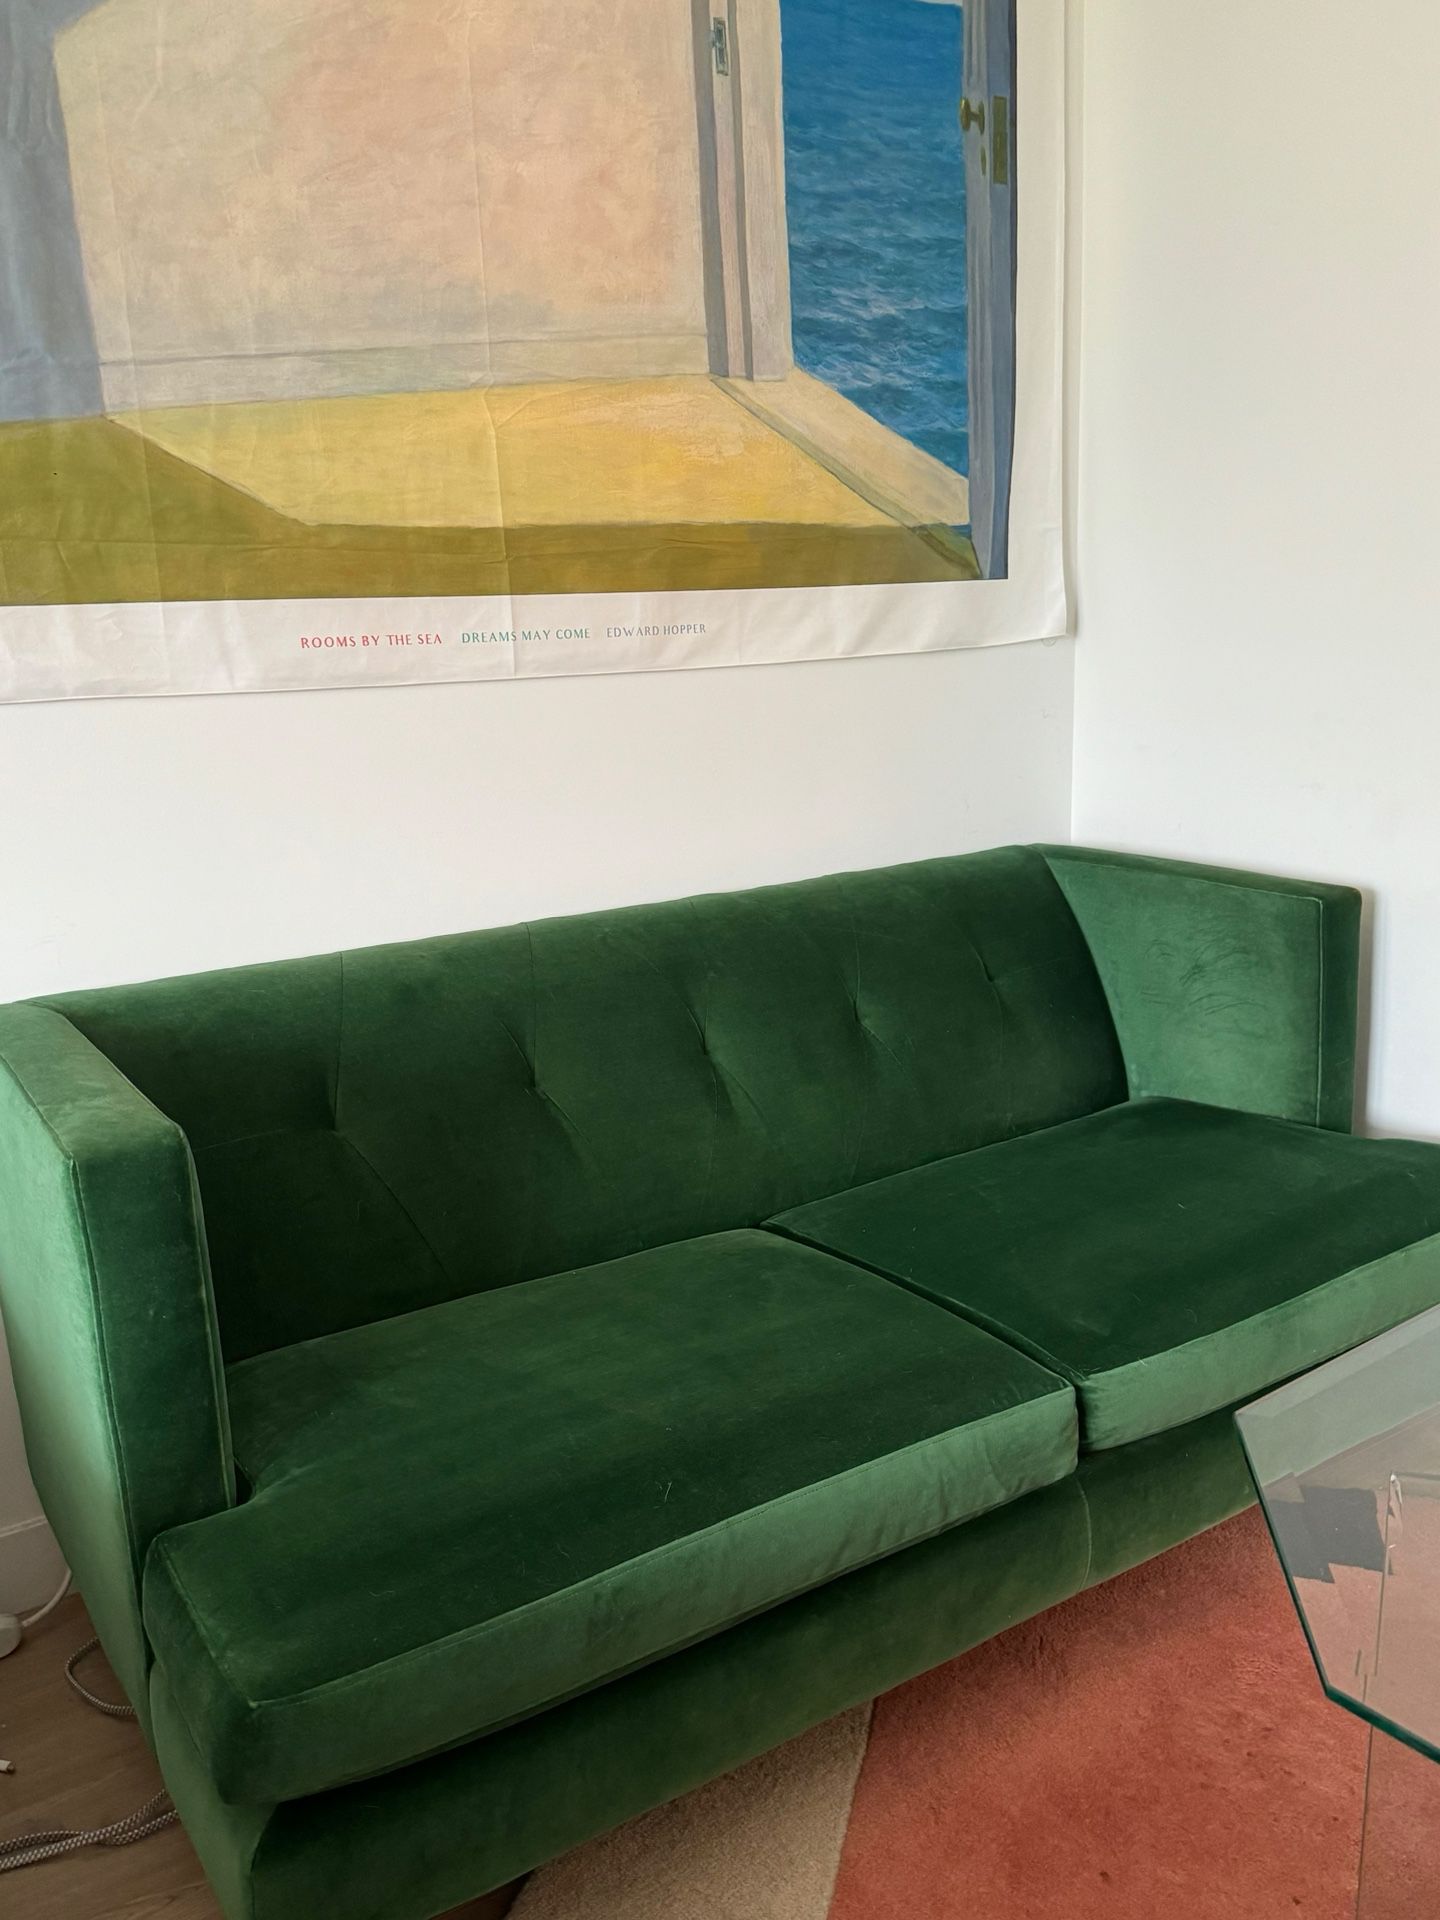 CB2 Avec Green Velvet Sofa 